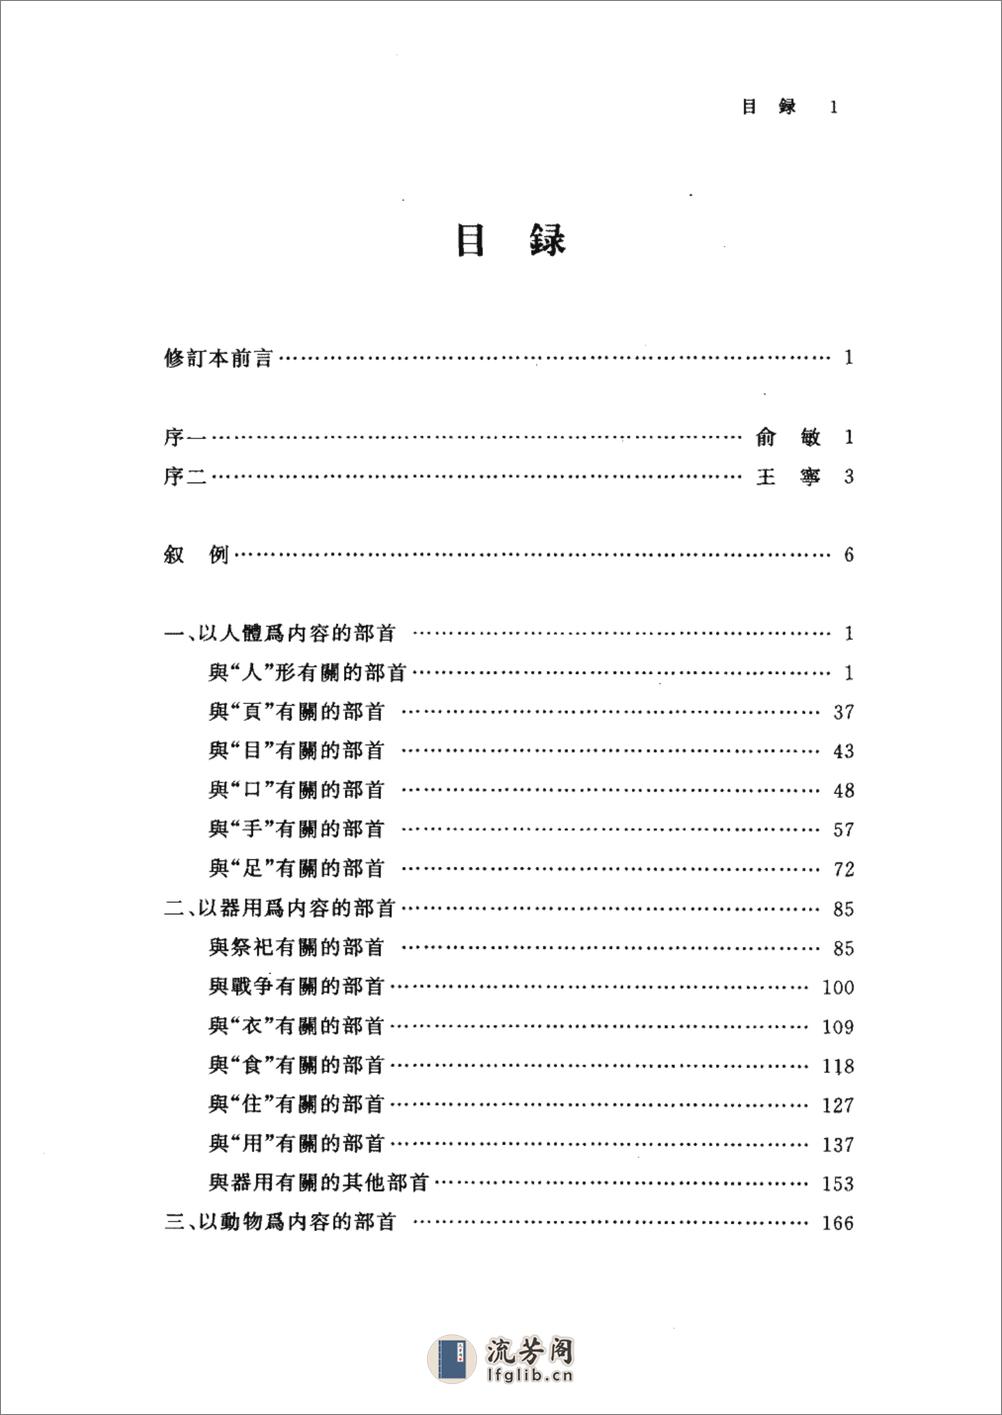 基础汉字形义释源 - 第18页预览图